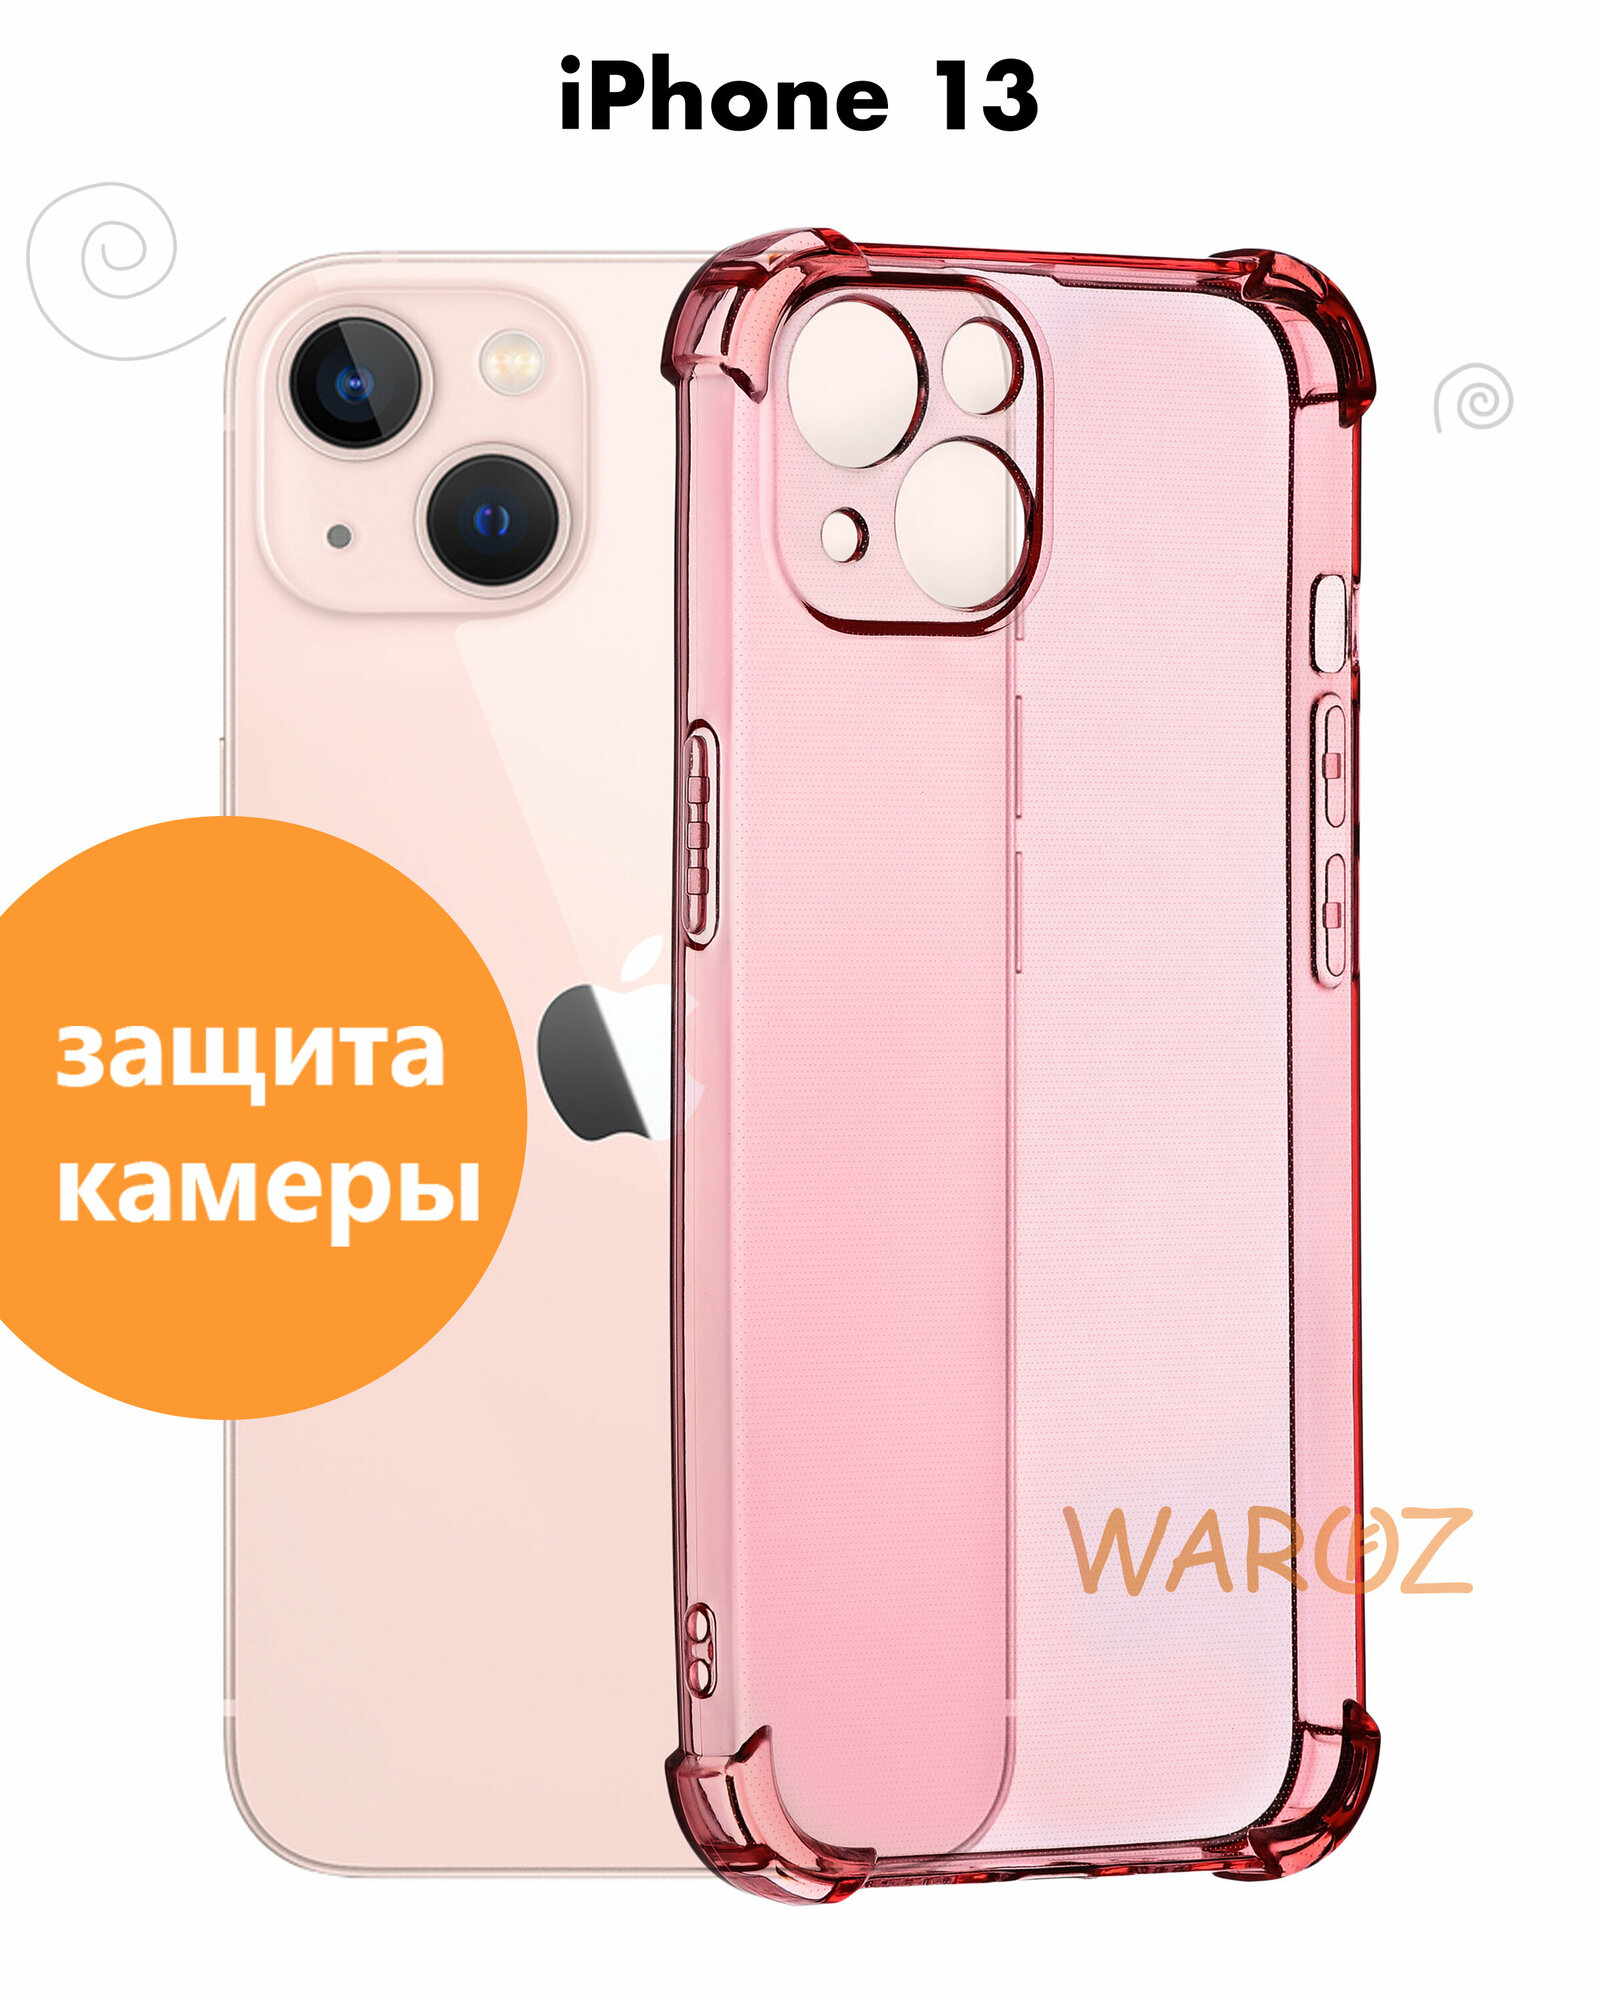 Чехол для смартфона Apple iPhone 13 силиконовый прозрачный противоударный с защитой камеры, бампер с усиленными углами для телефона Айфон 13, розовый